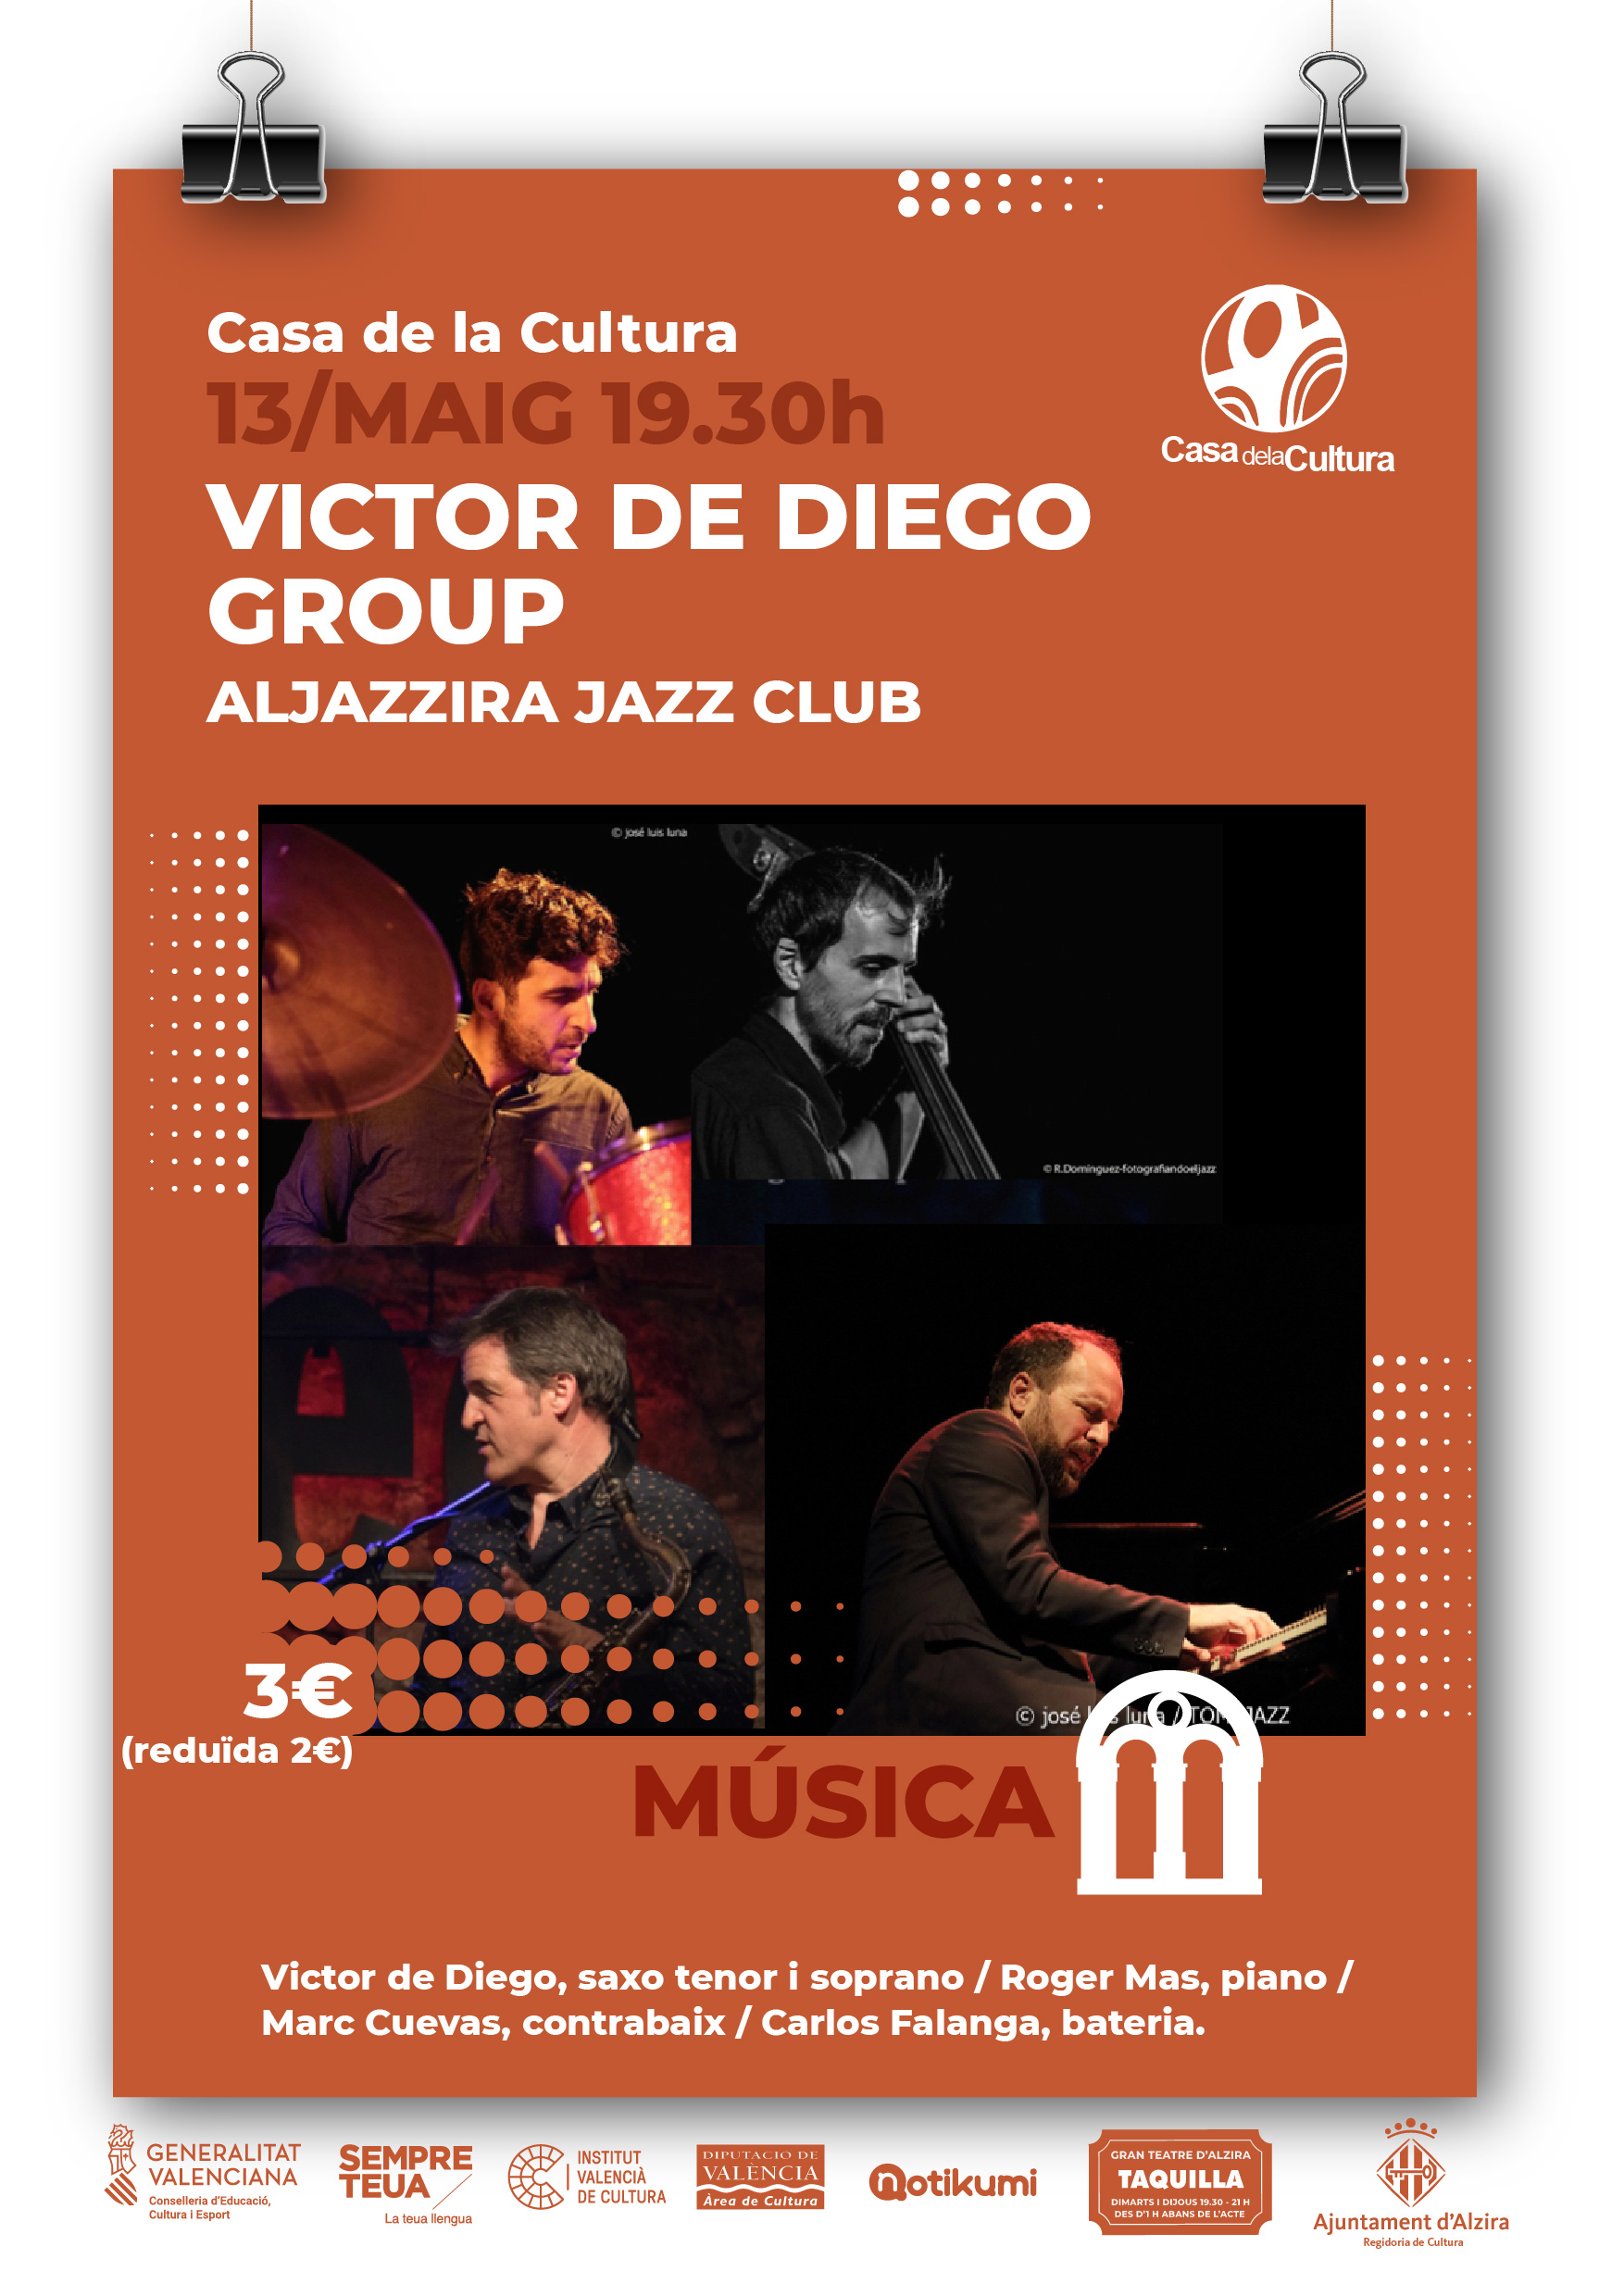 ALJAZZIRA JAZZ CLUB - Victor de Diego Group